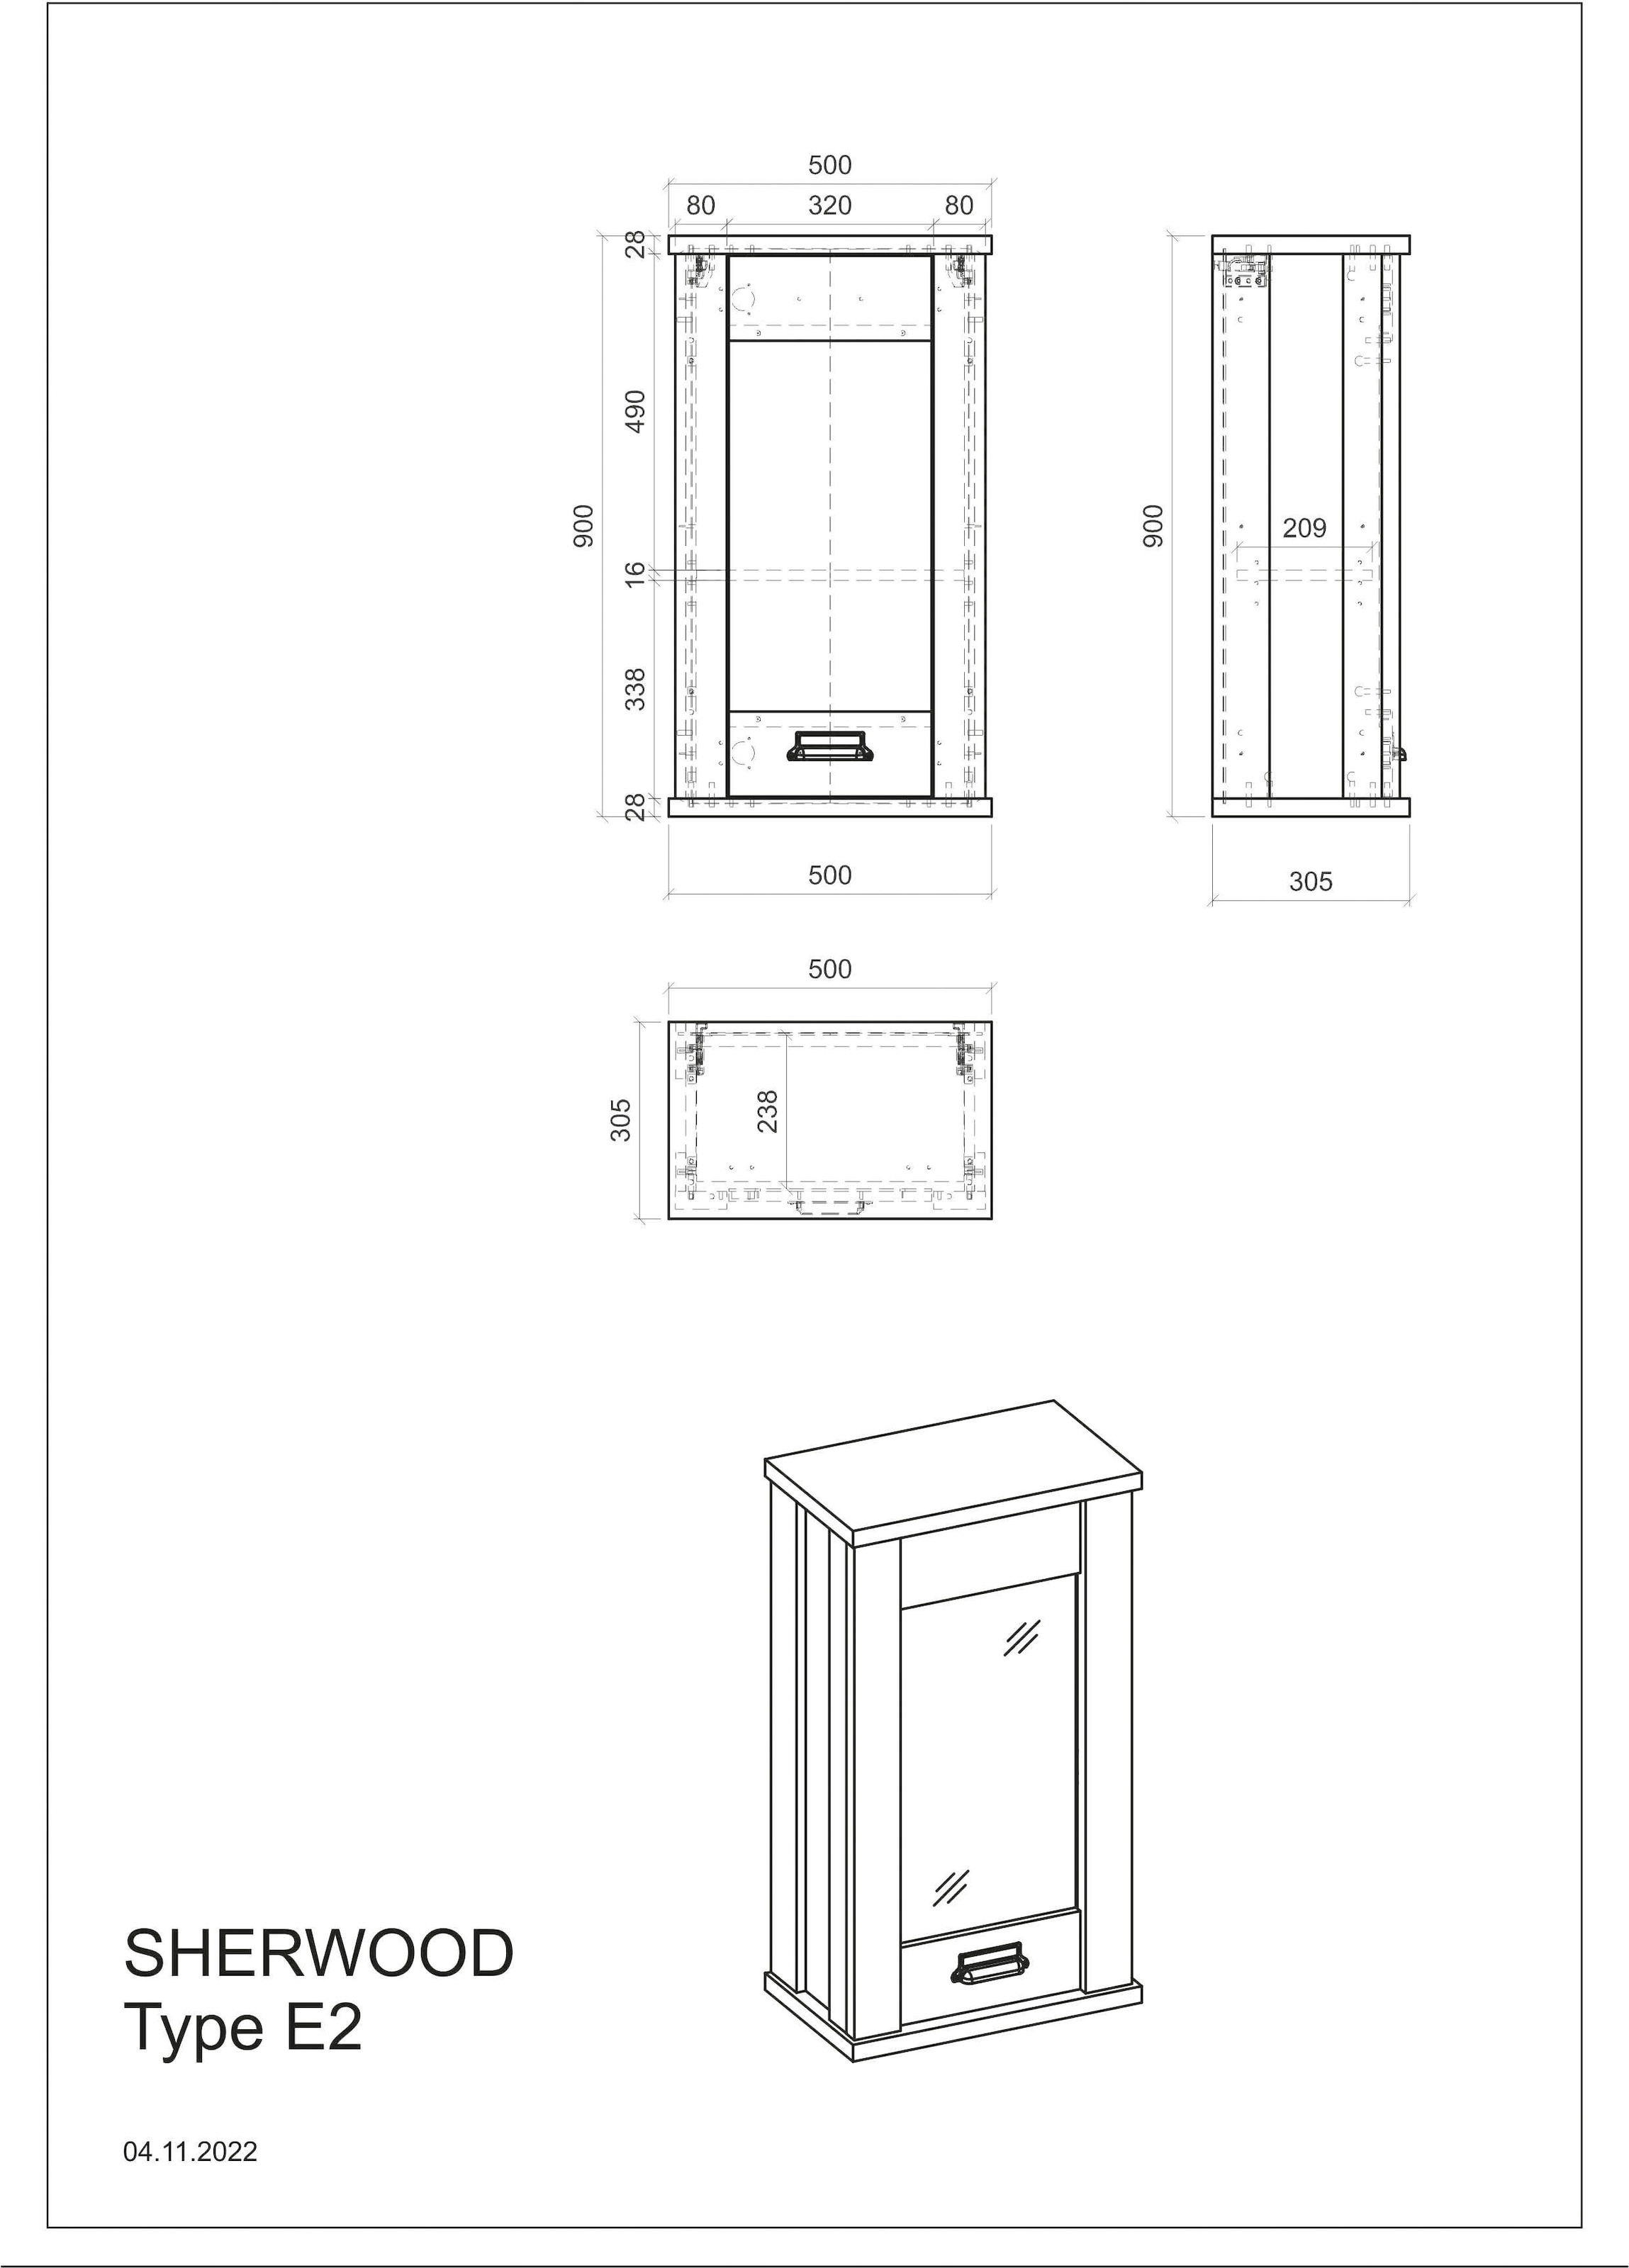 Home affaire Hängeschrank »Sherwood«, mit Apothekergriff aus Metall, Höhe 90 cm